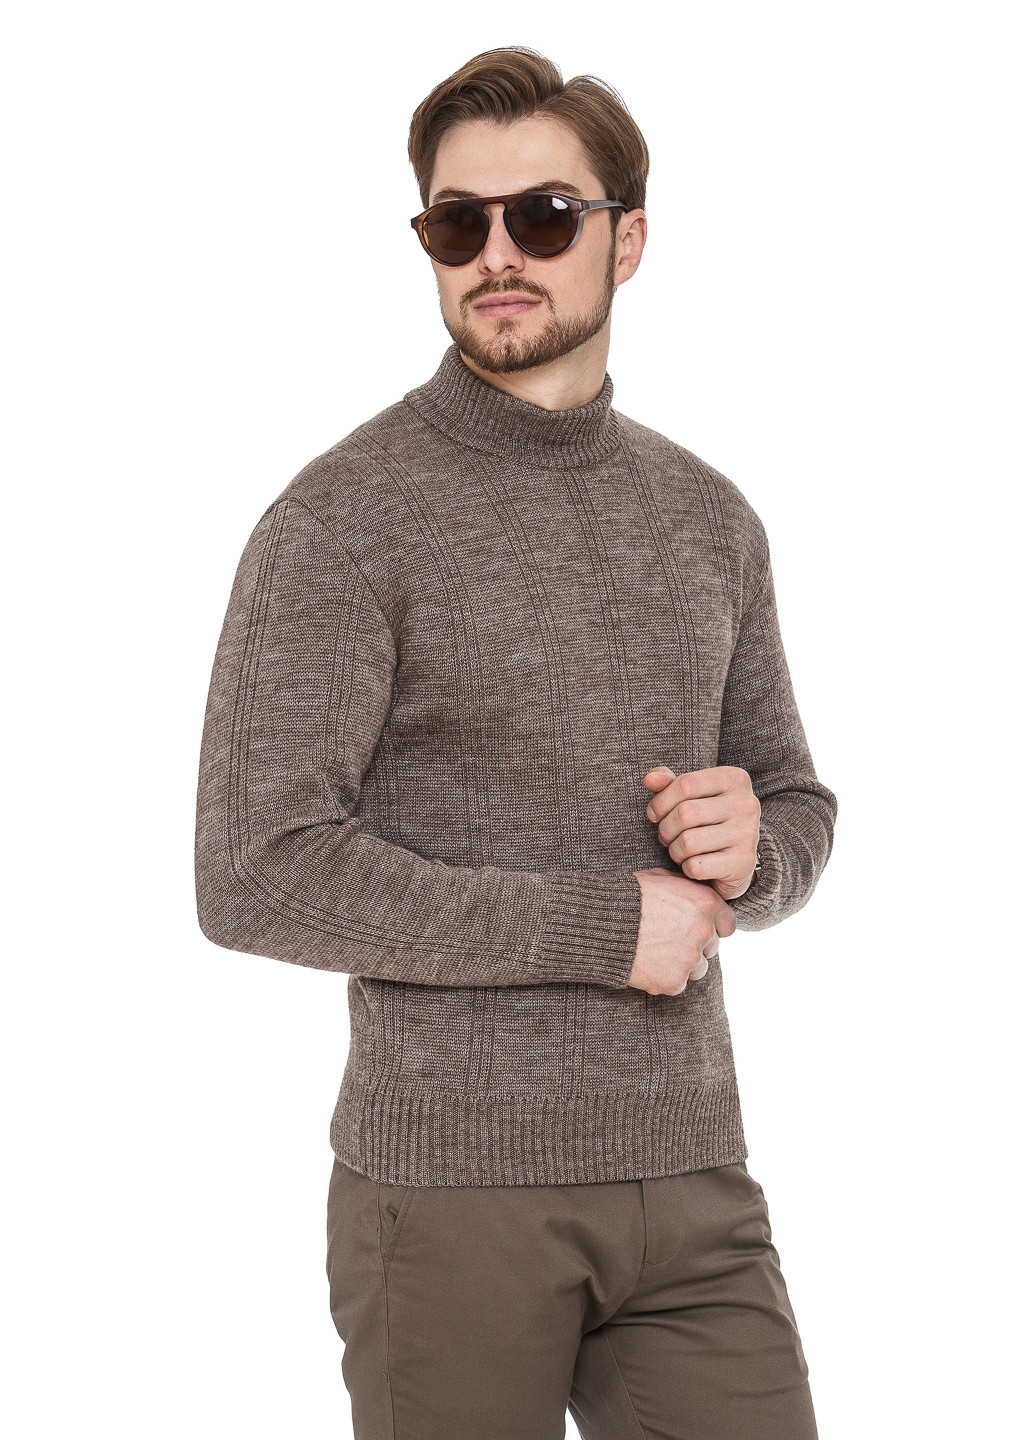 Кофейный свитер с воротником стойка «авиатор» SVTR